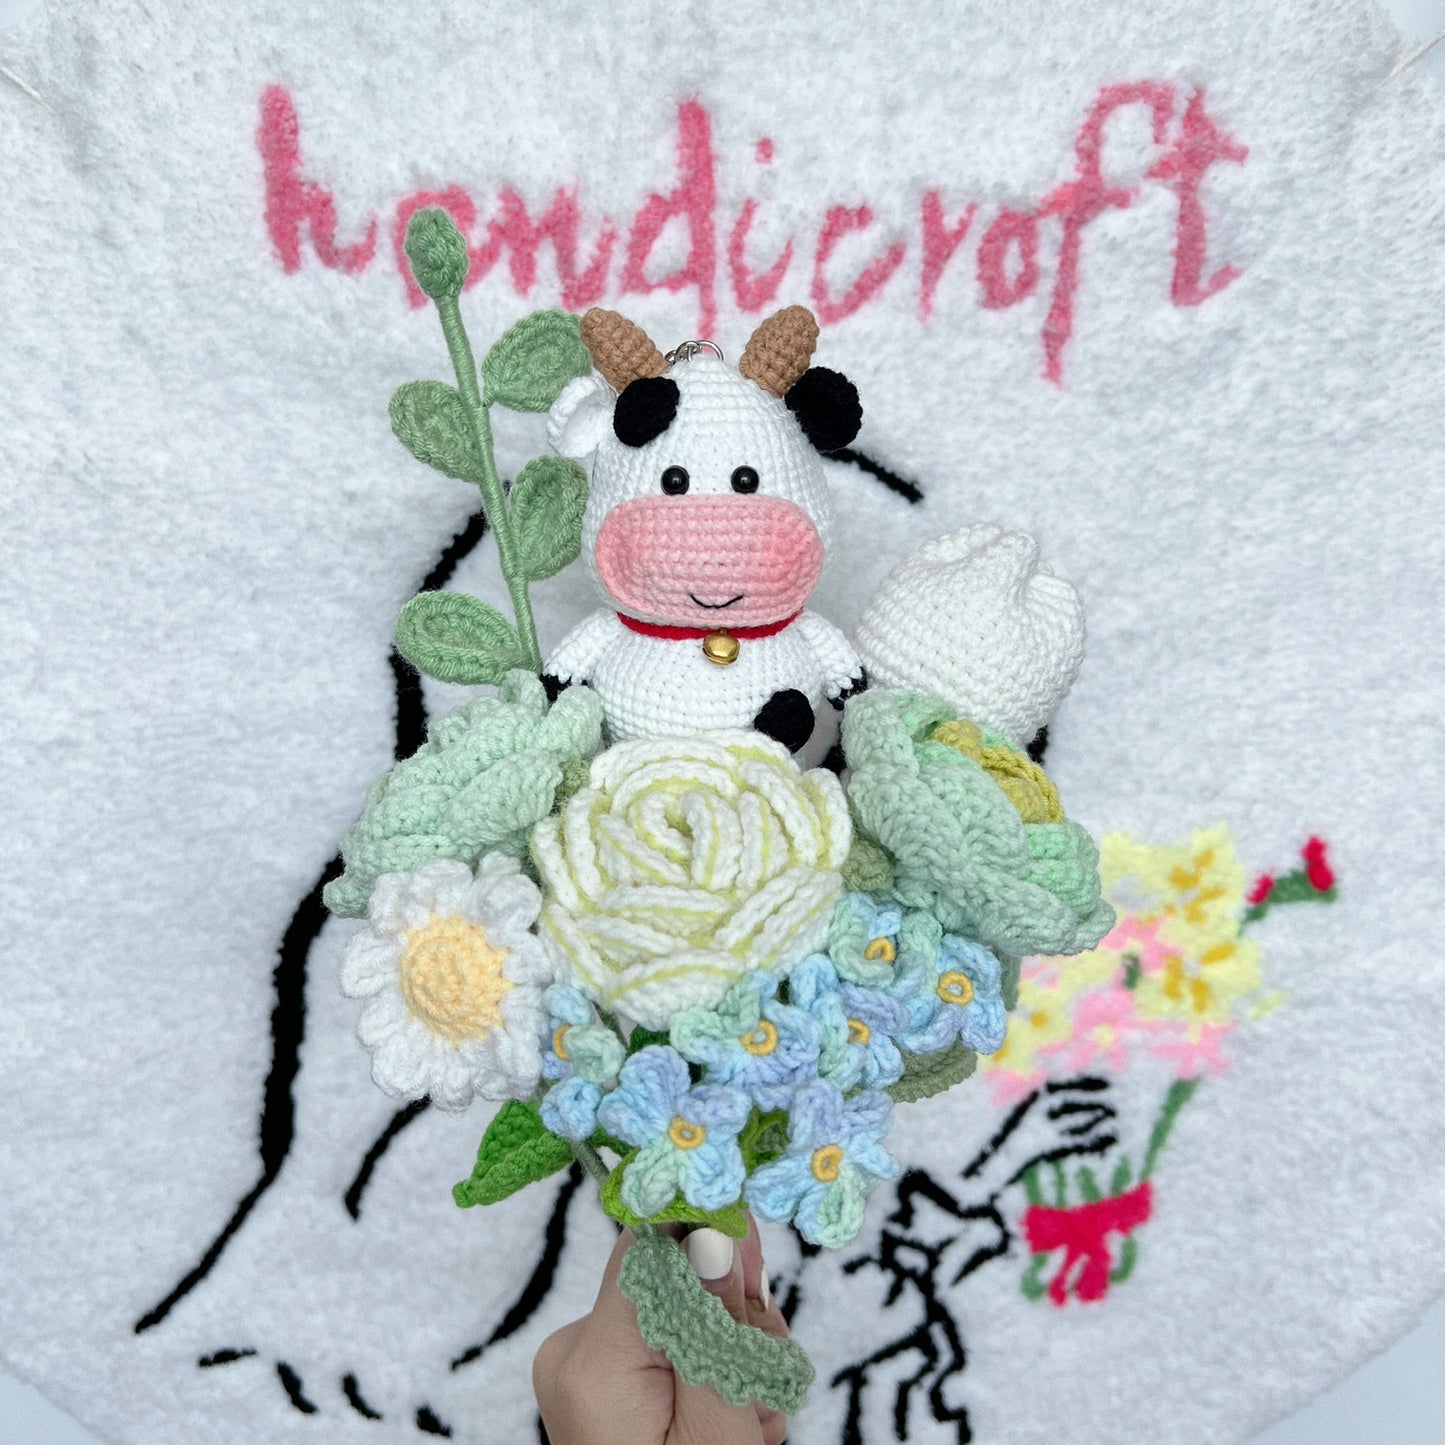 moo in bloom - crochet flower bouquet 🐮ྀི